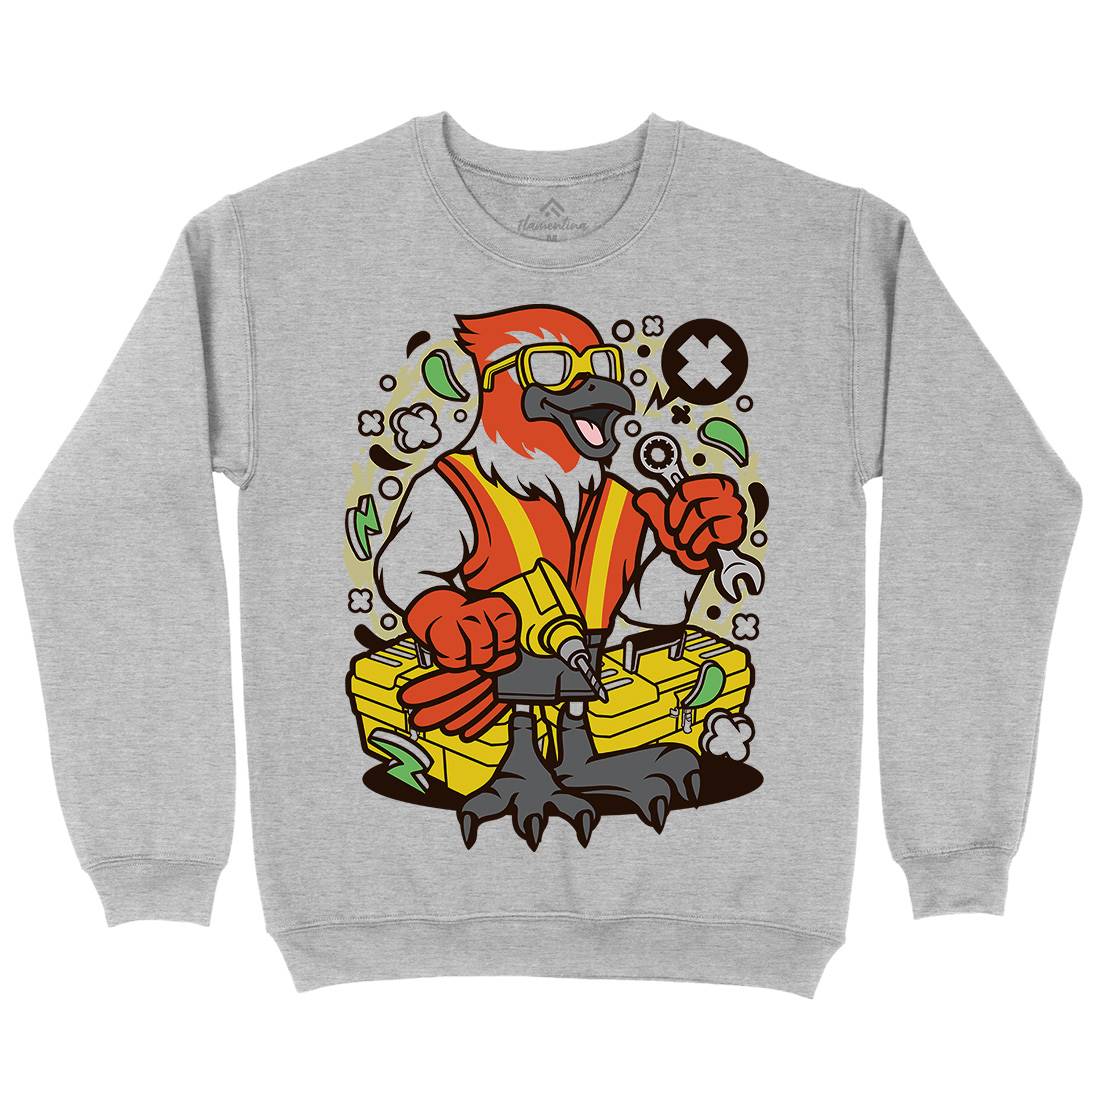 Bird Mechanic Worker Kids Crew Neck Sweatshirt Work C502